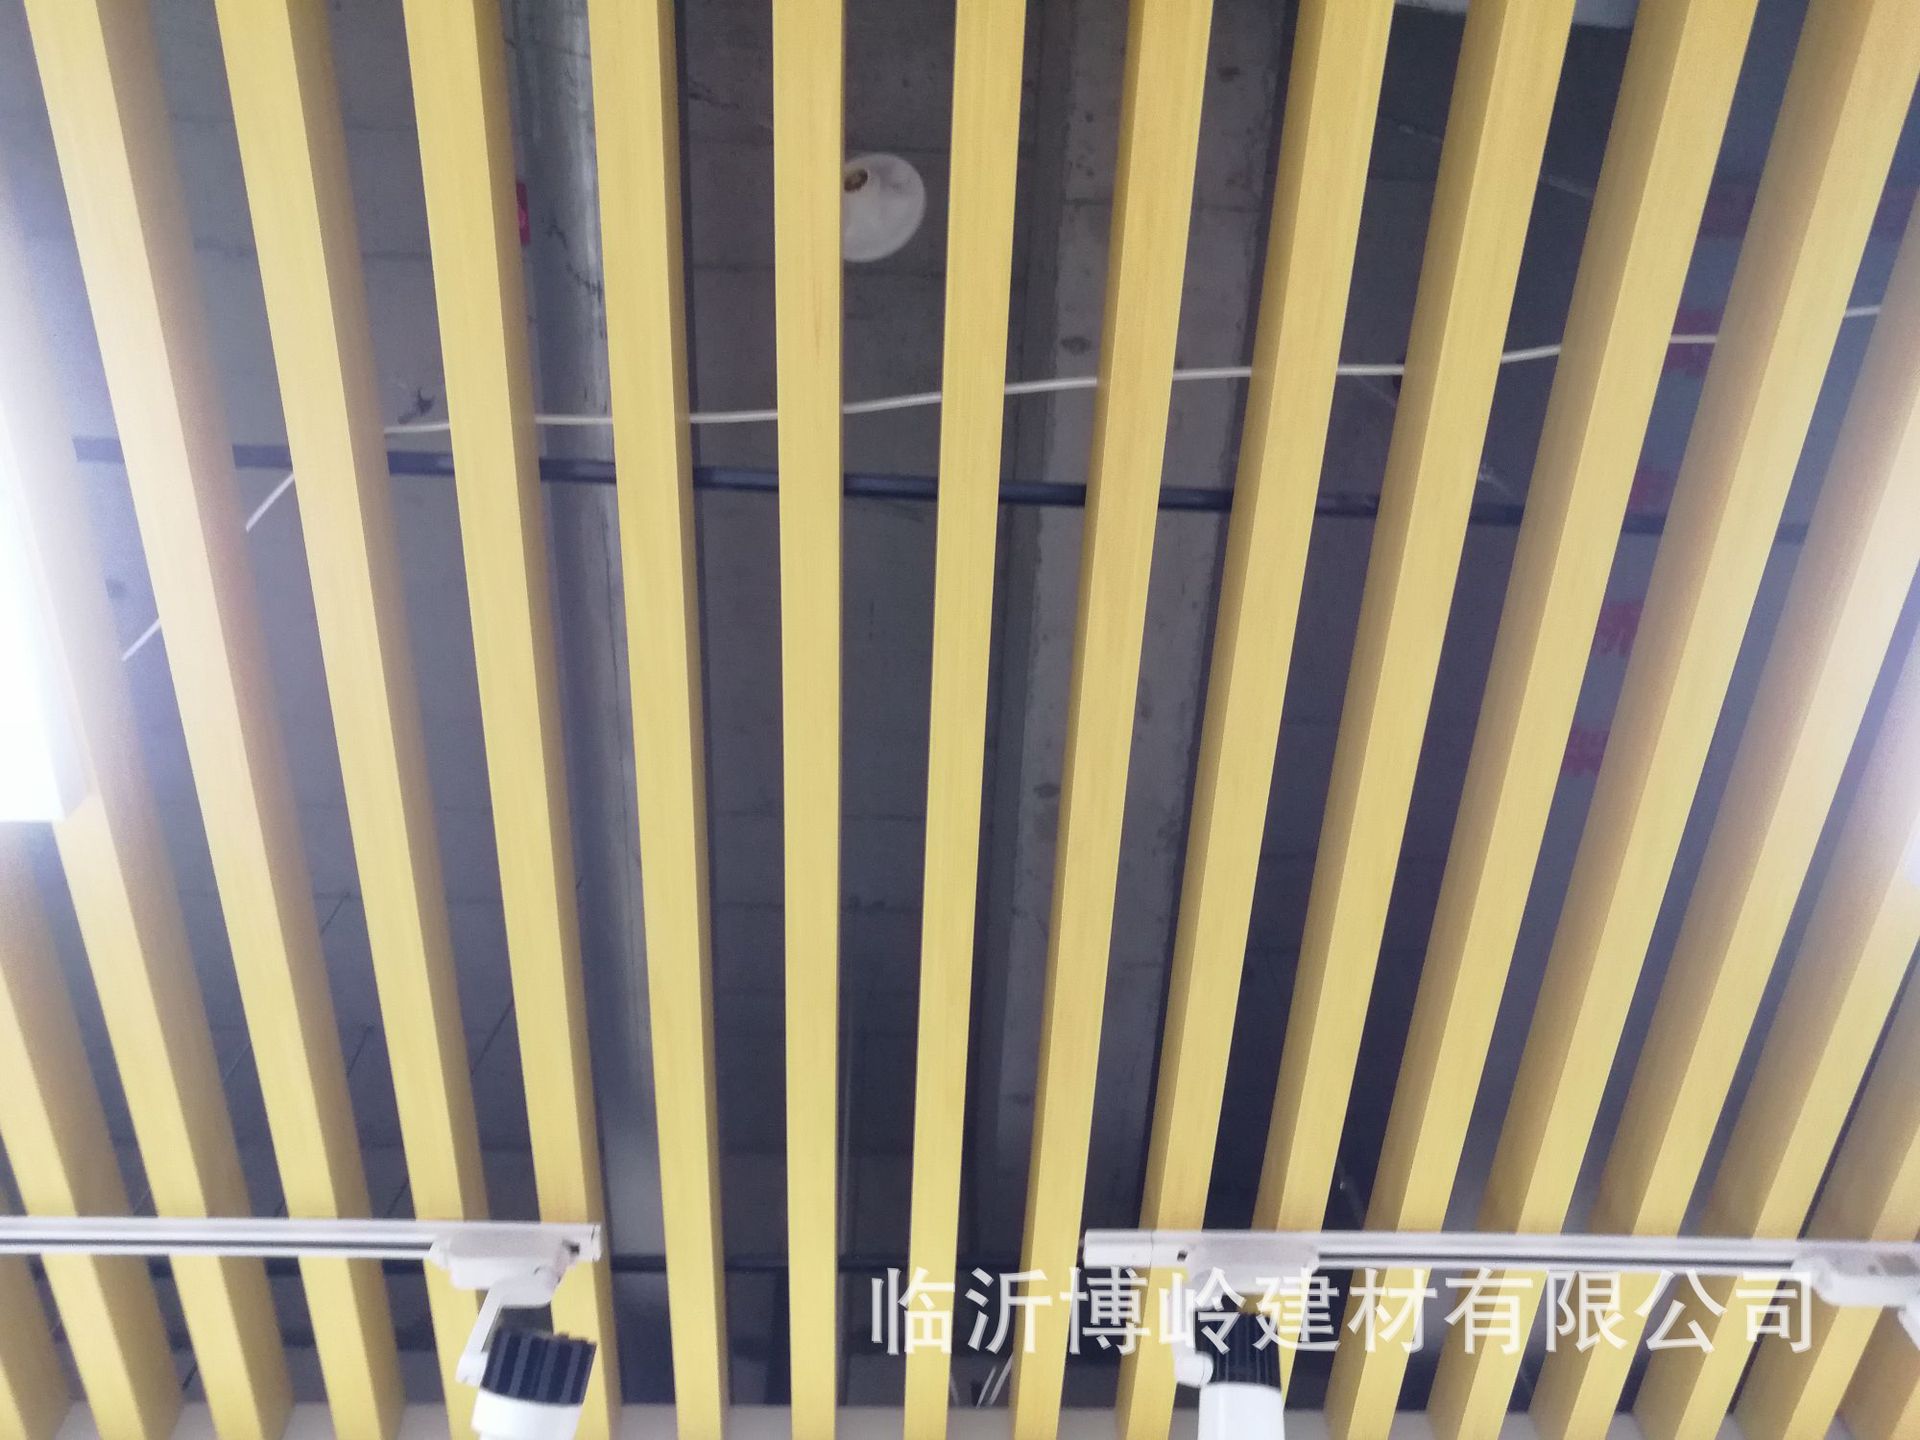 厂家直销50*60U型天花 生态木吊顶天花 商场大厅过道室内吊顶材料示例图15